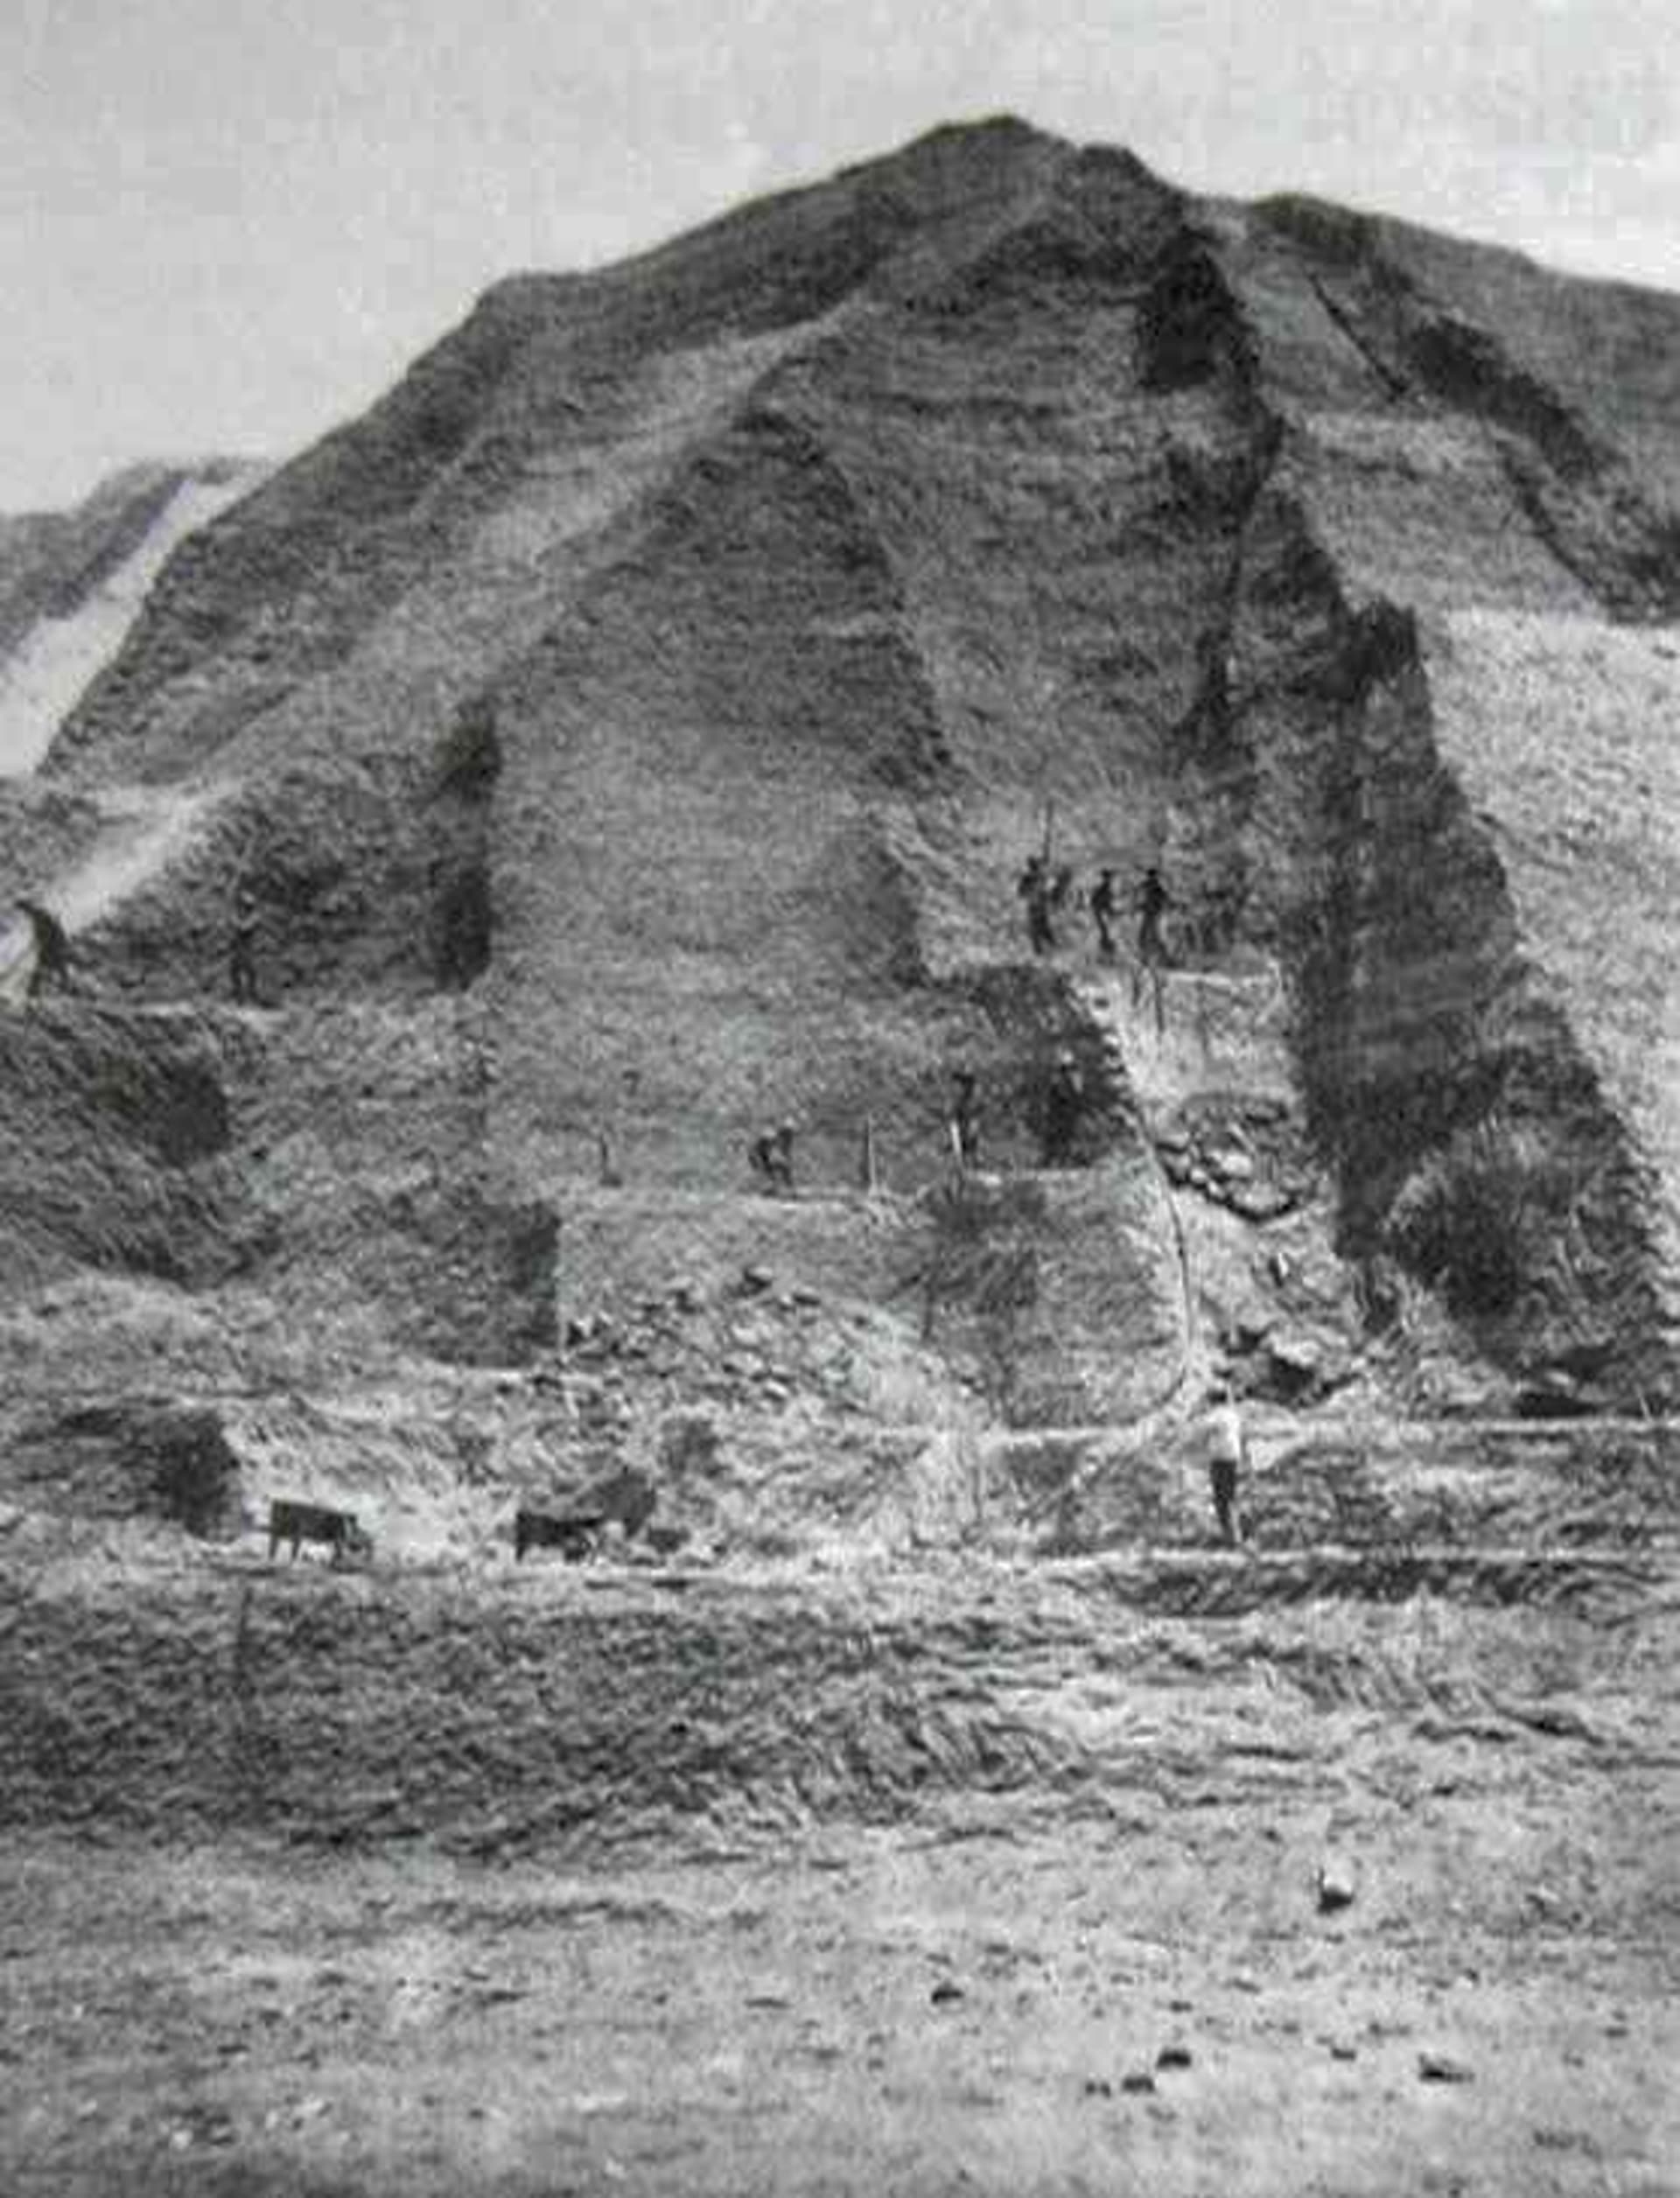 Těžba guána na ostrovech u pobřeží Peru (kol. 1860)